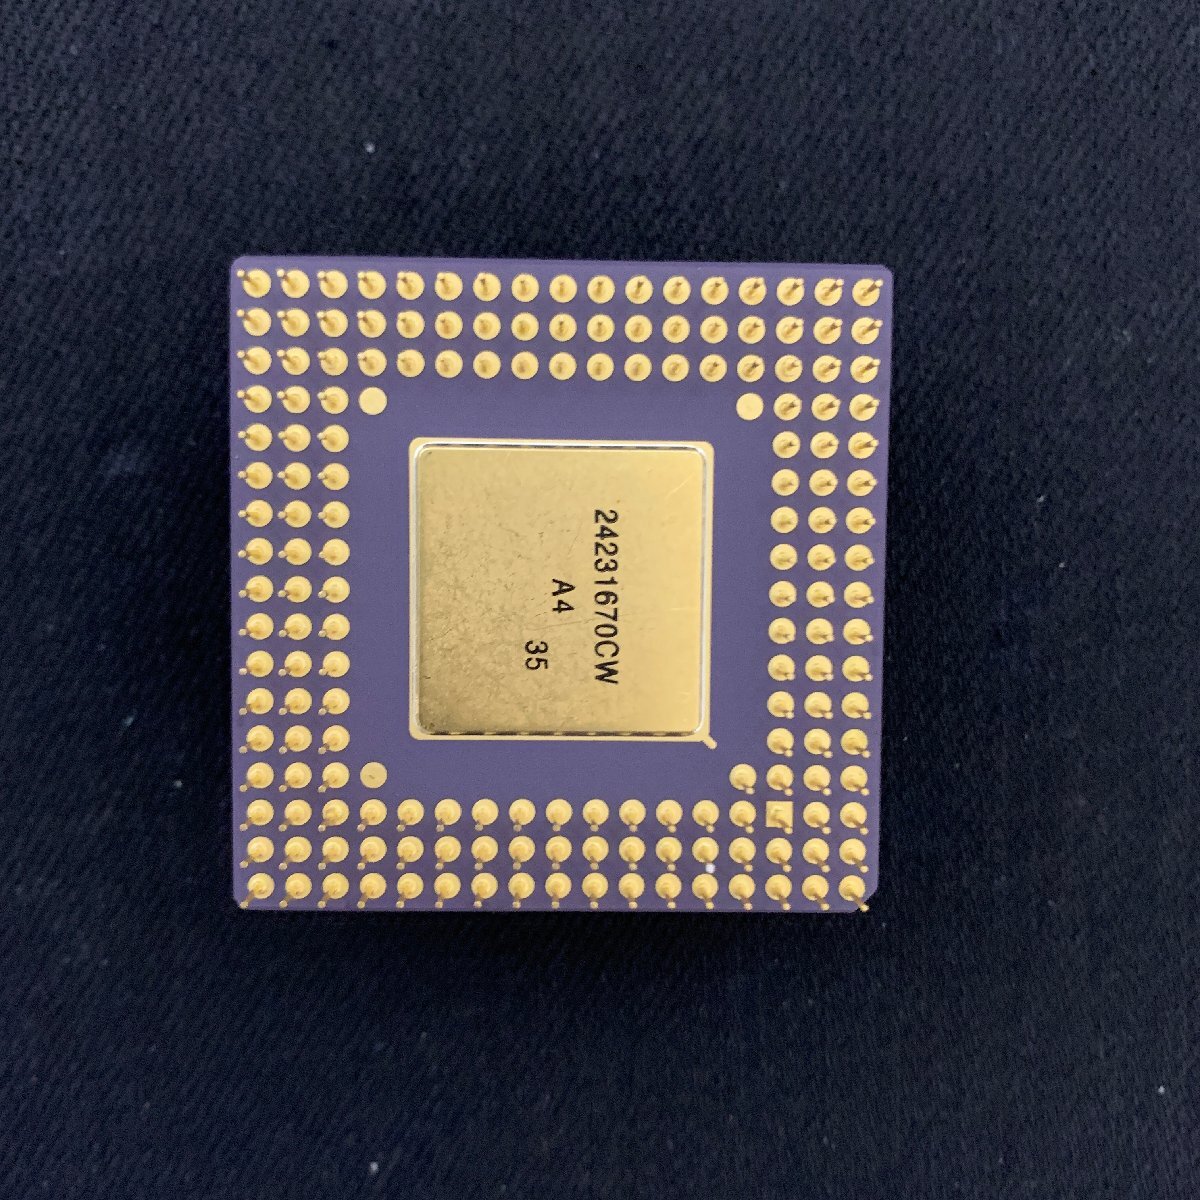 L012 Intel オーバードライブプロセッサ DX4ODP100 SZ957 Ver 1.1 動作確認清掃済の画像2